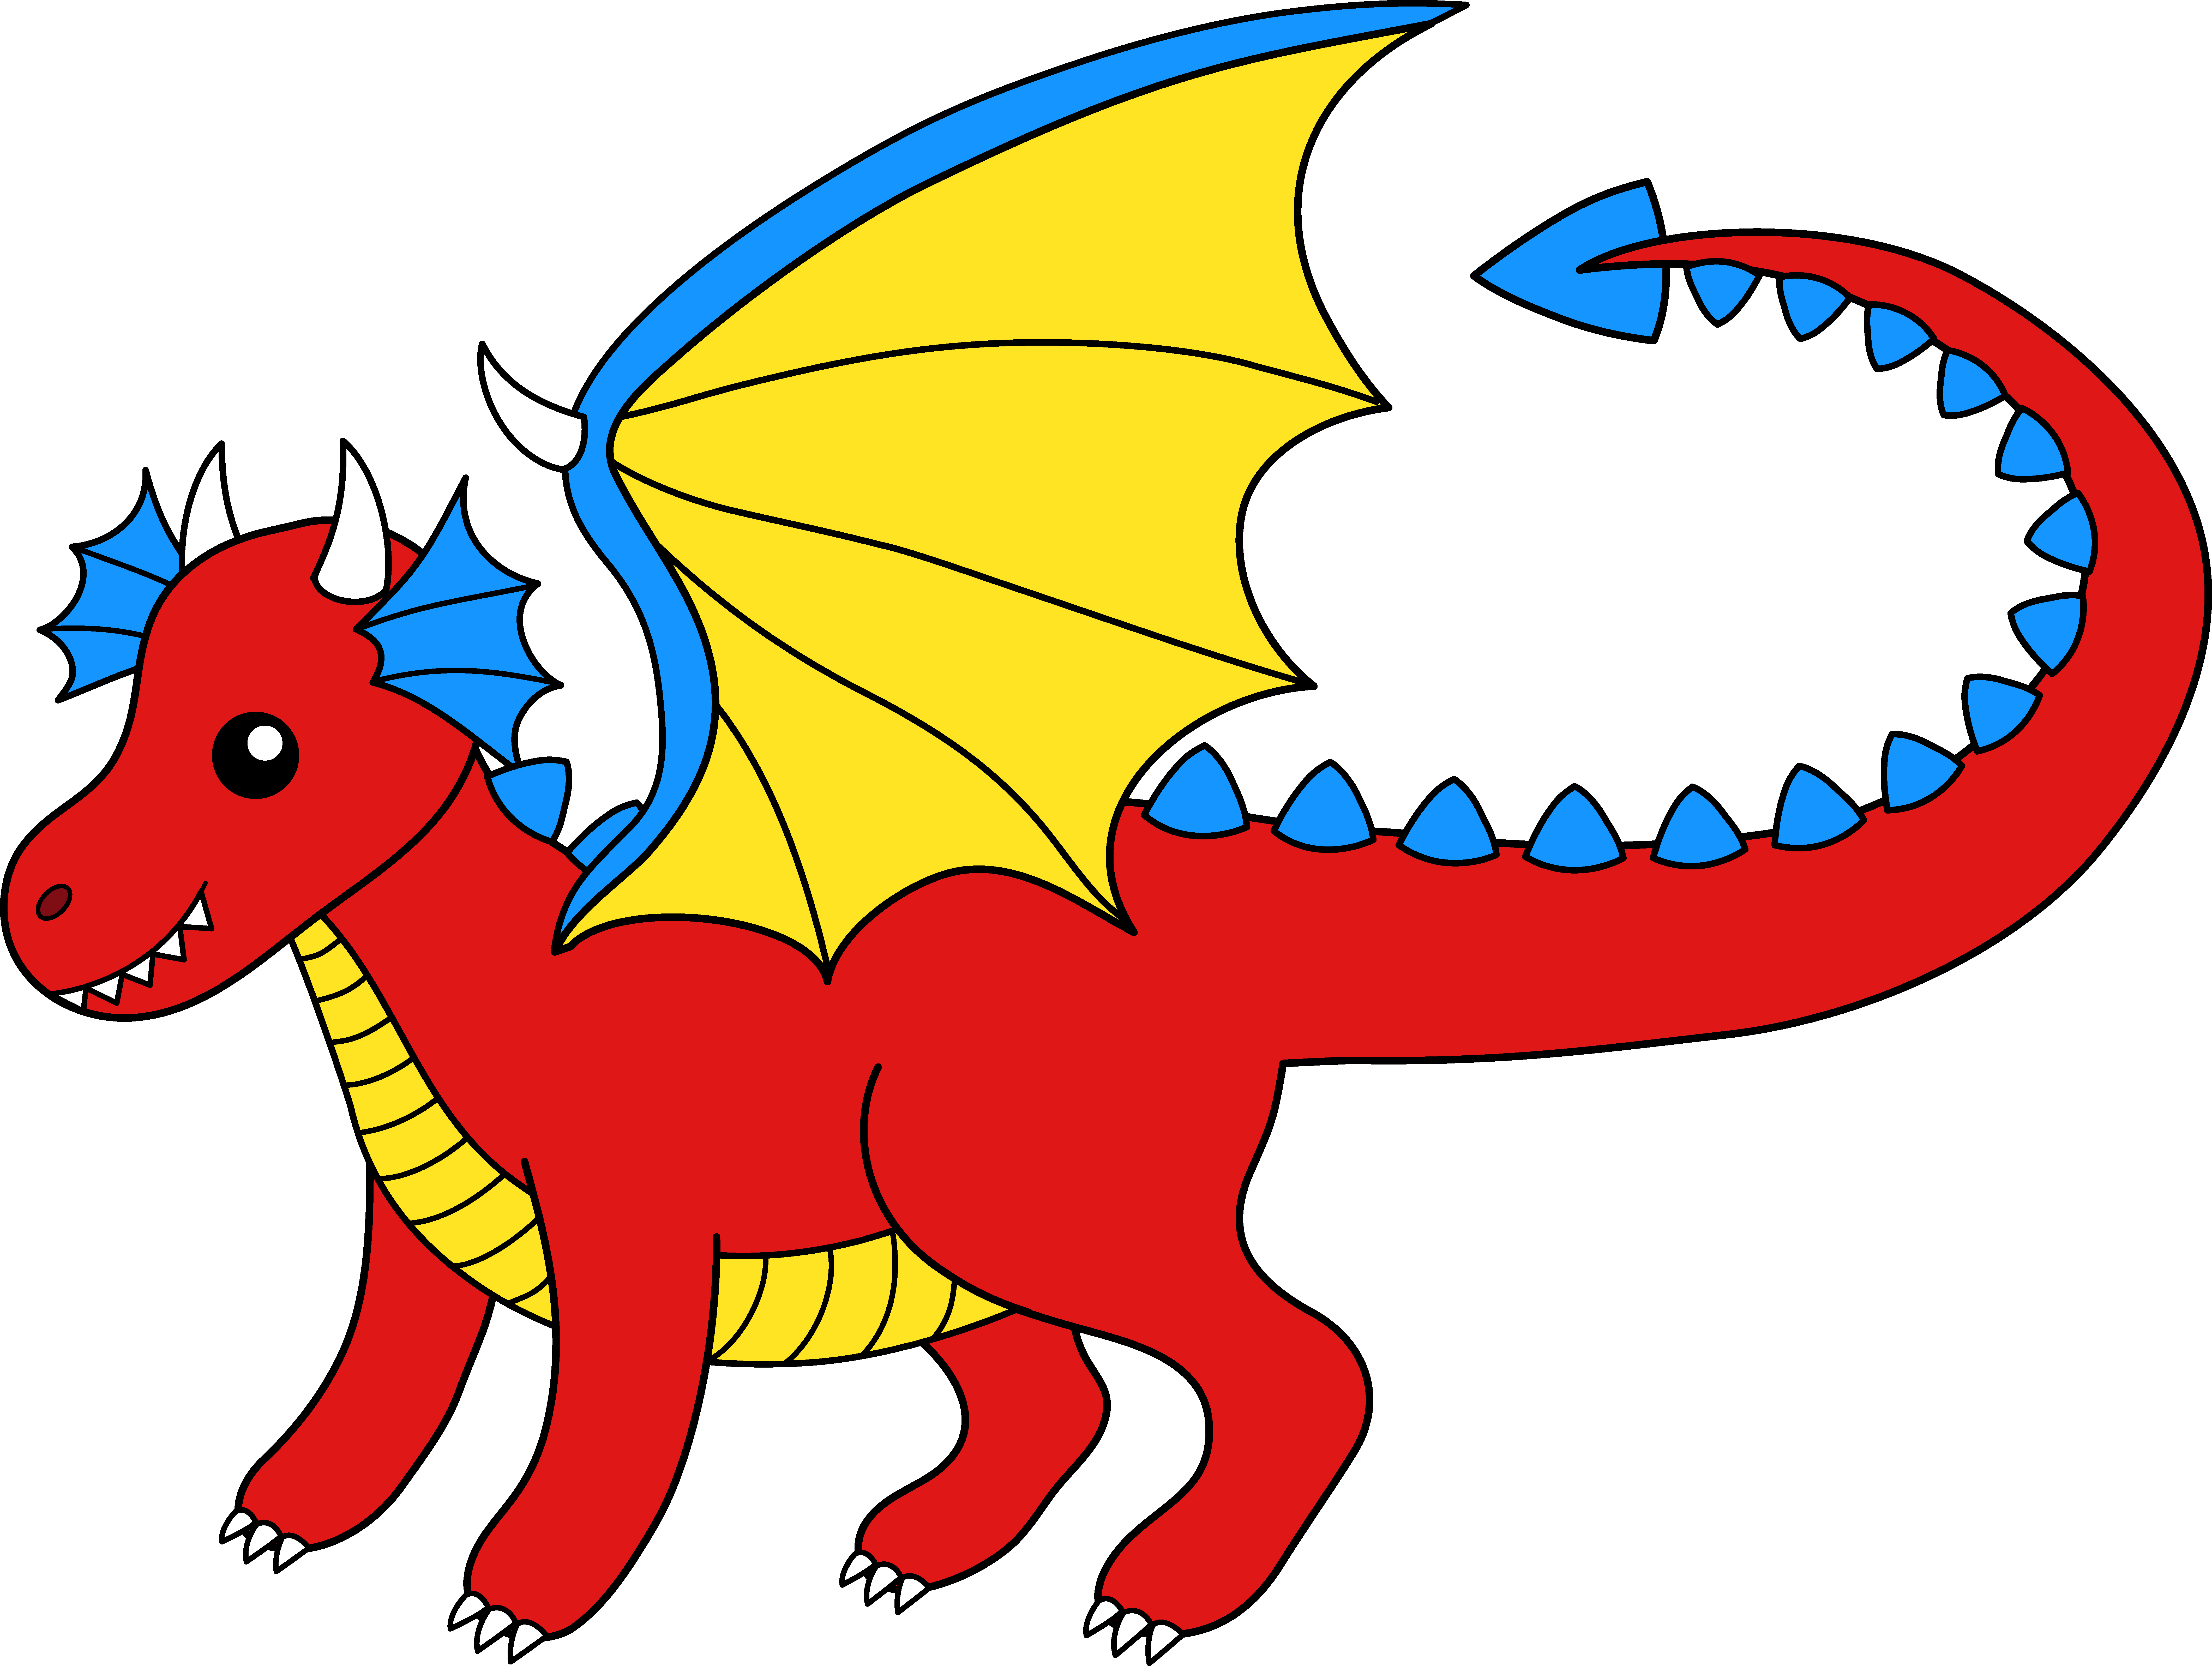 Clip Art Of Dragons - Clip Art Of Dragons (8480x6387)